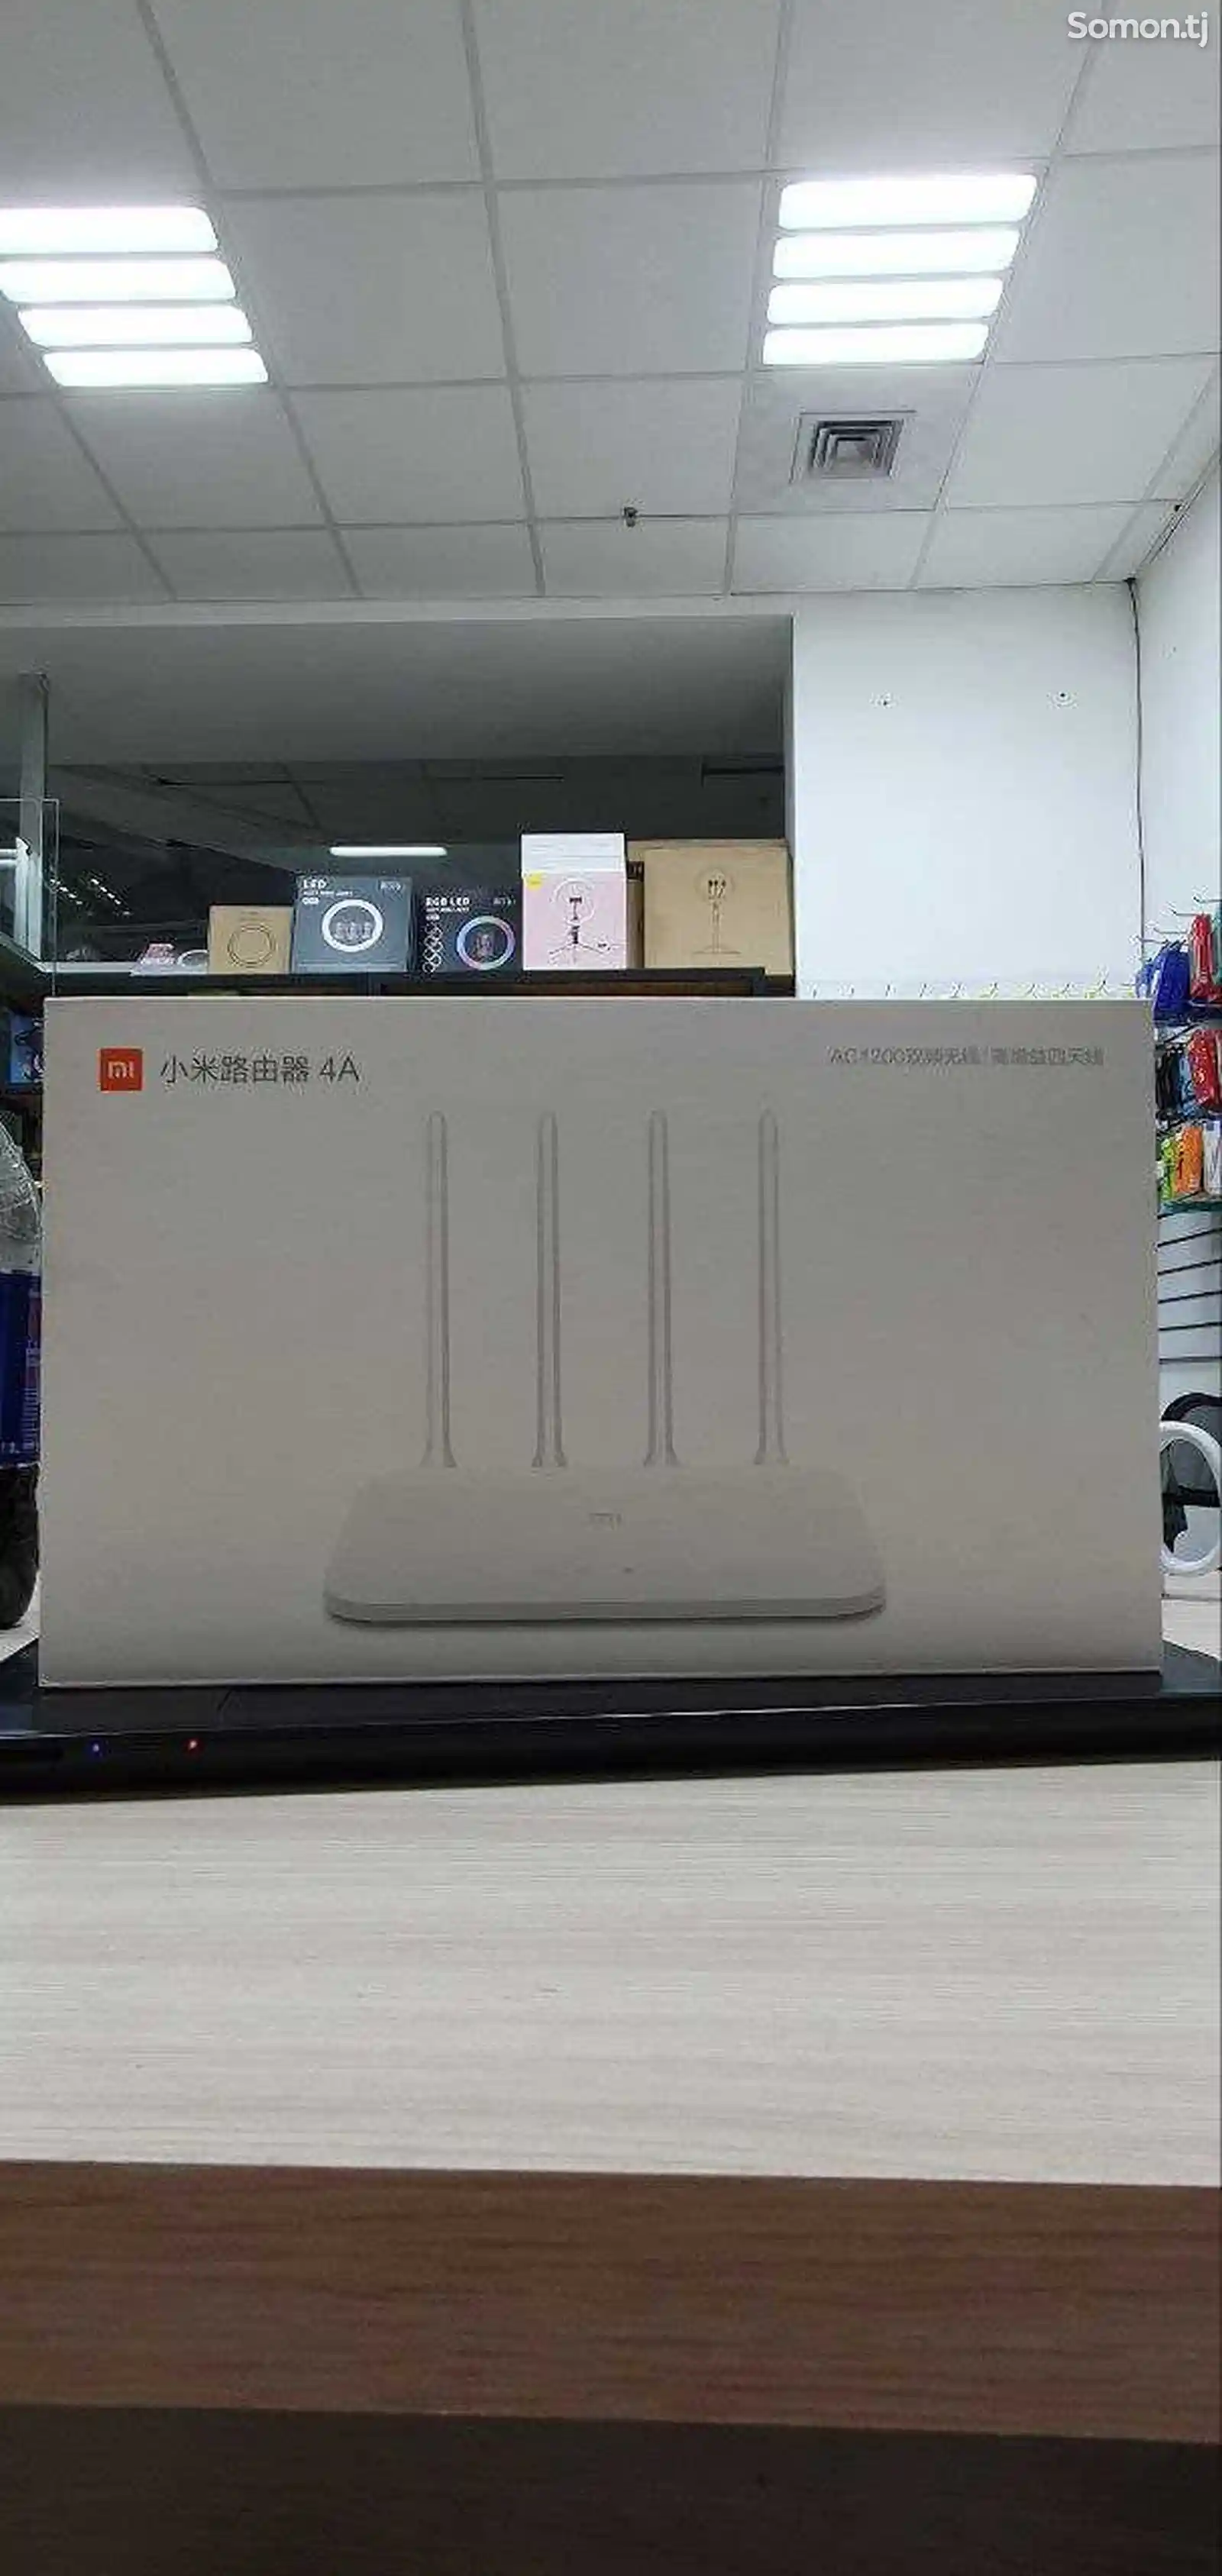 Wi-Fi роутер Xiaomi Mi Wi-Fi Router 4A-1